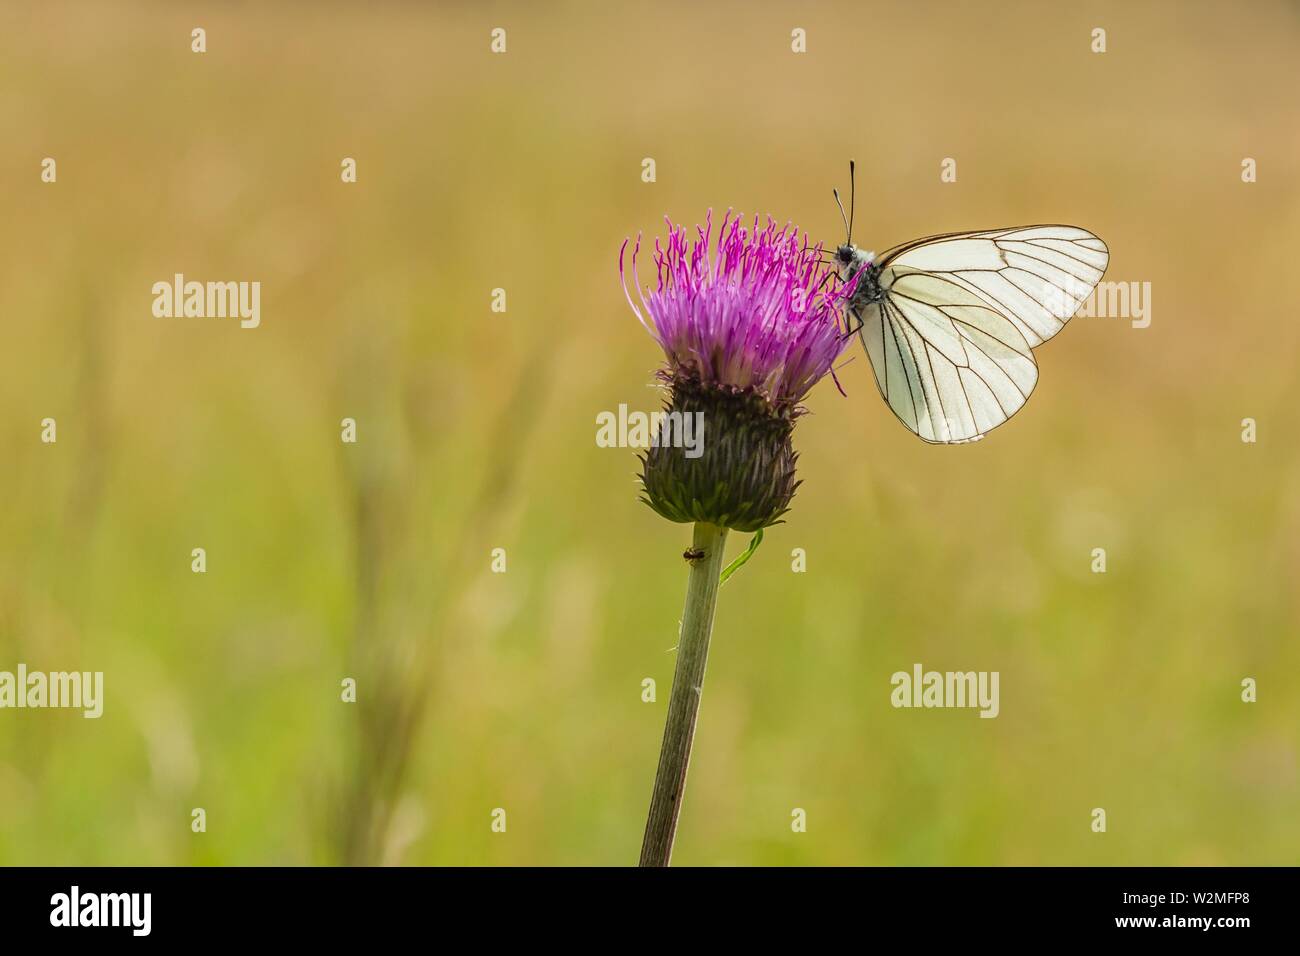 Groß, schwarz geäderten weiß Schmetterling sitzt auf lila Distel in einer Wiese an einem sonnigen Sommertag. Blurry grün braunen Hintergrund. Stockfoto